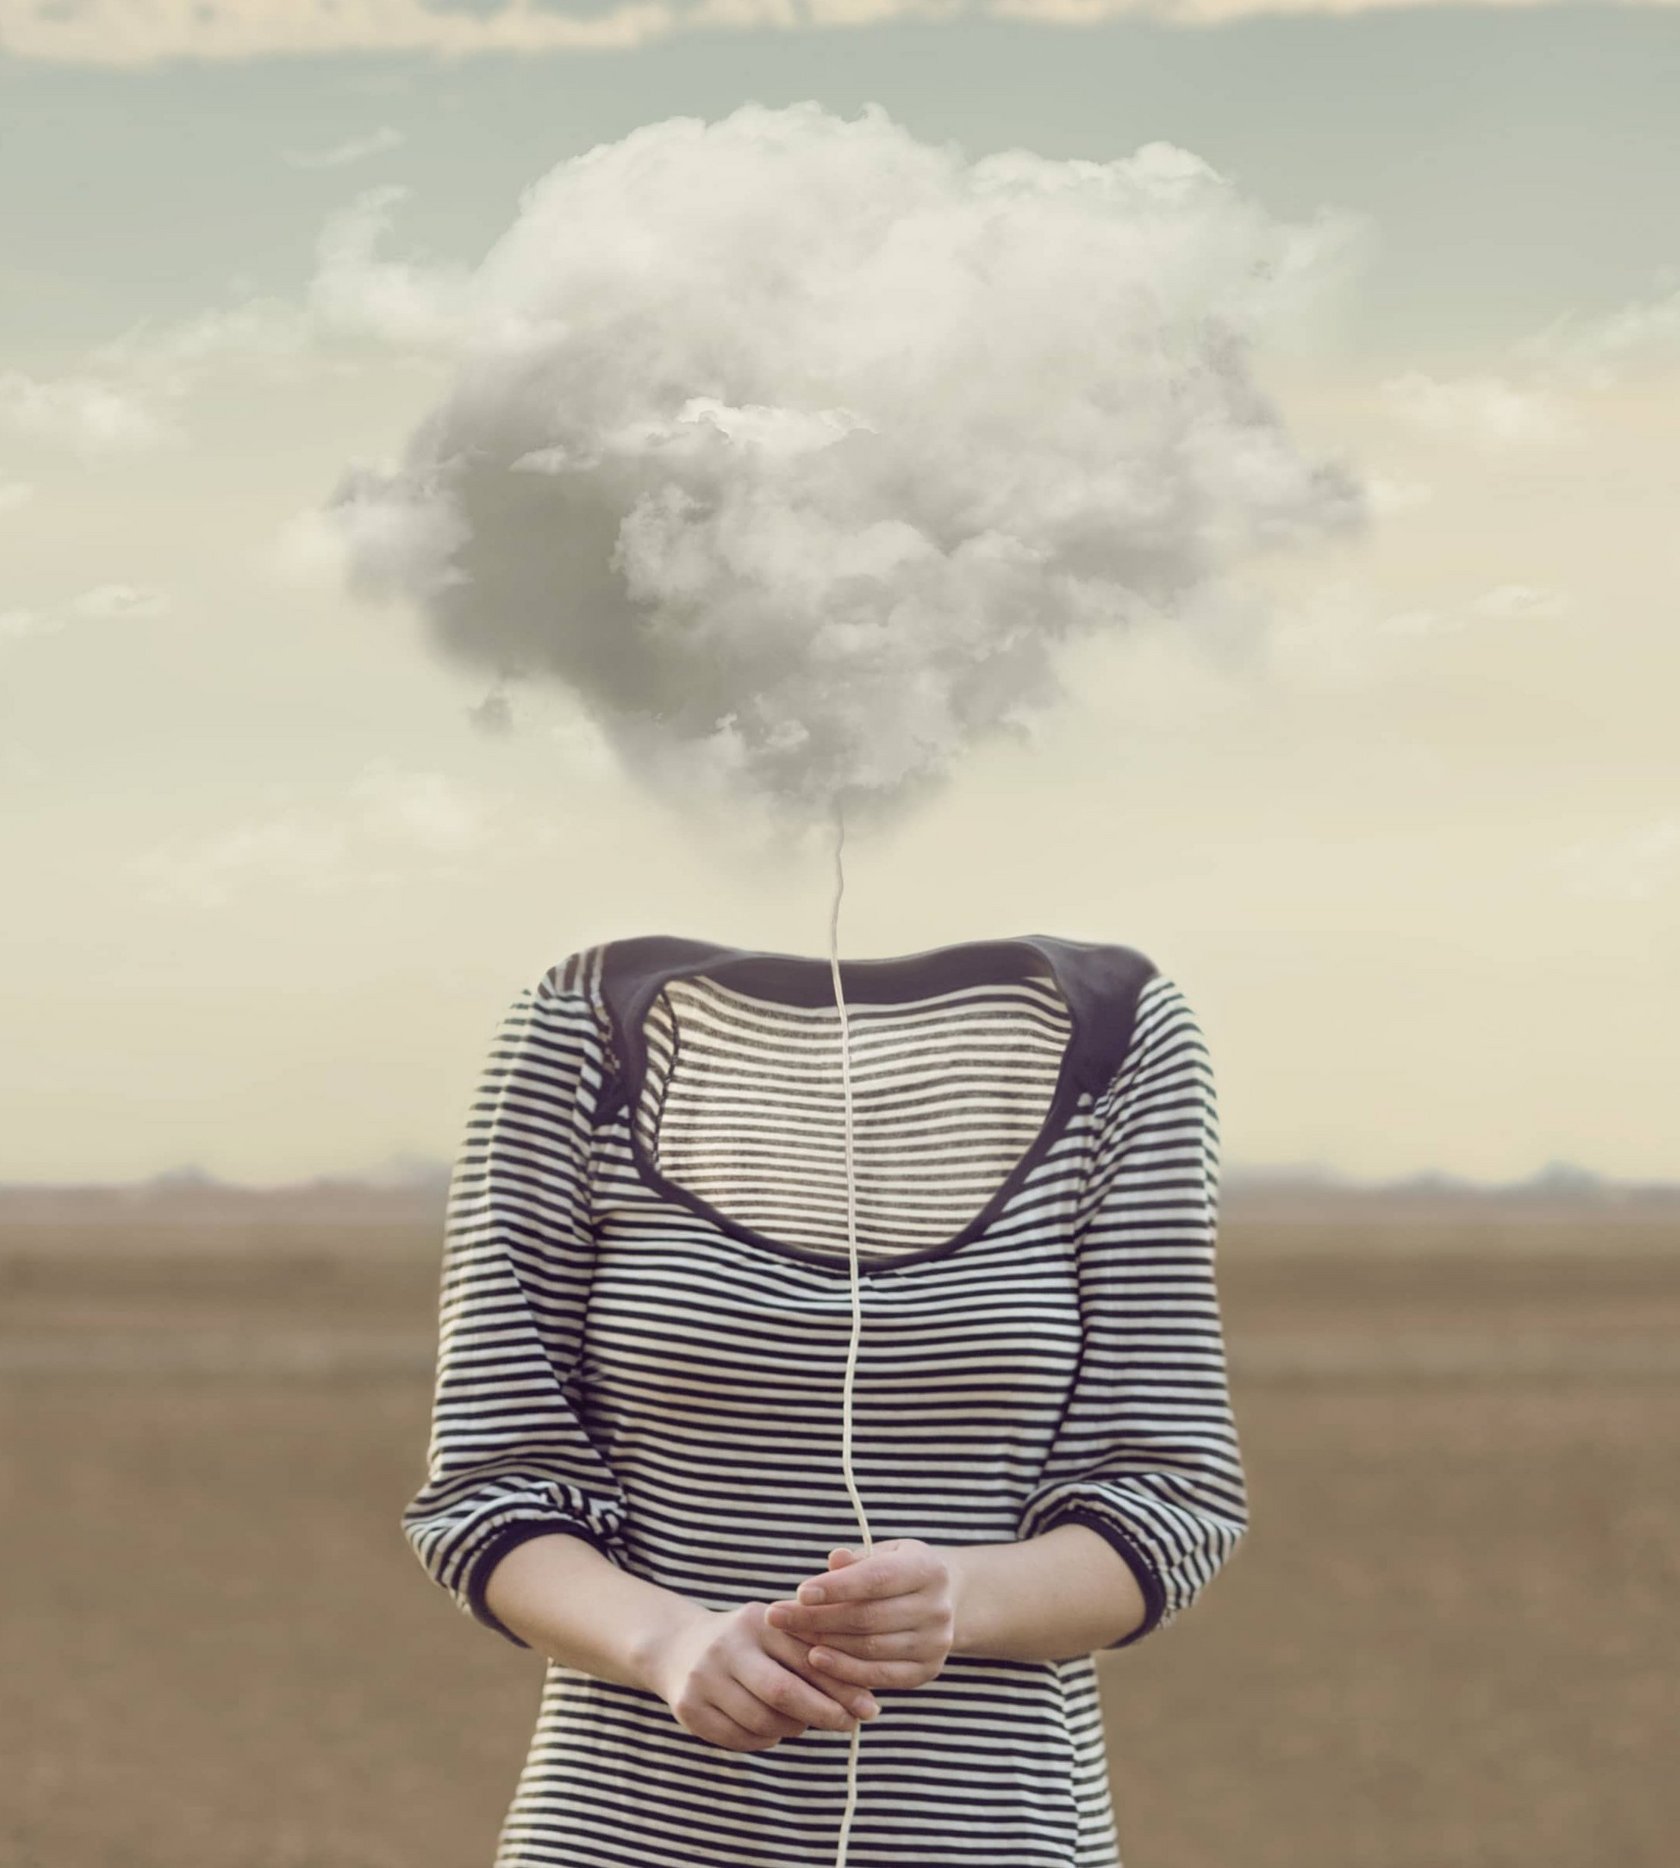 Bild von einer Frau, deren Kopf eine Rauchwolke ist, um die Denkstörung zu symbolisieren